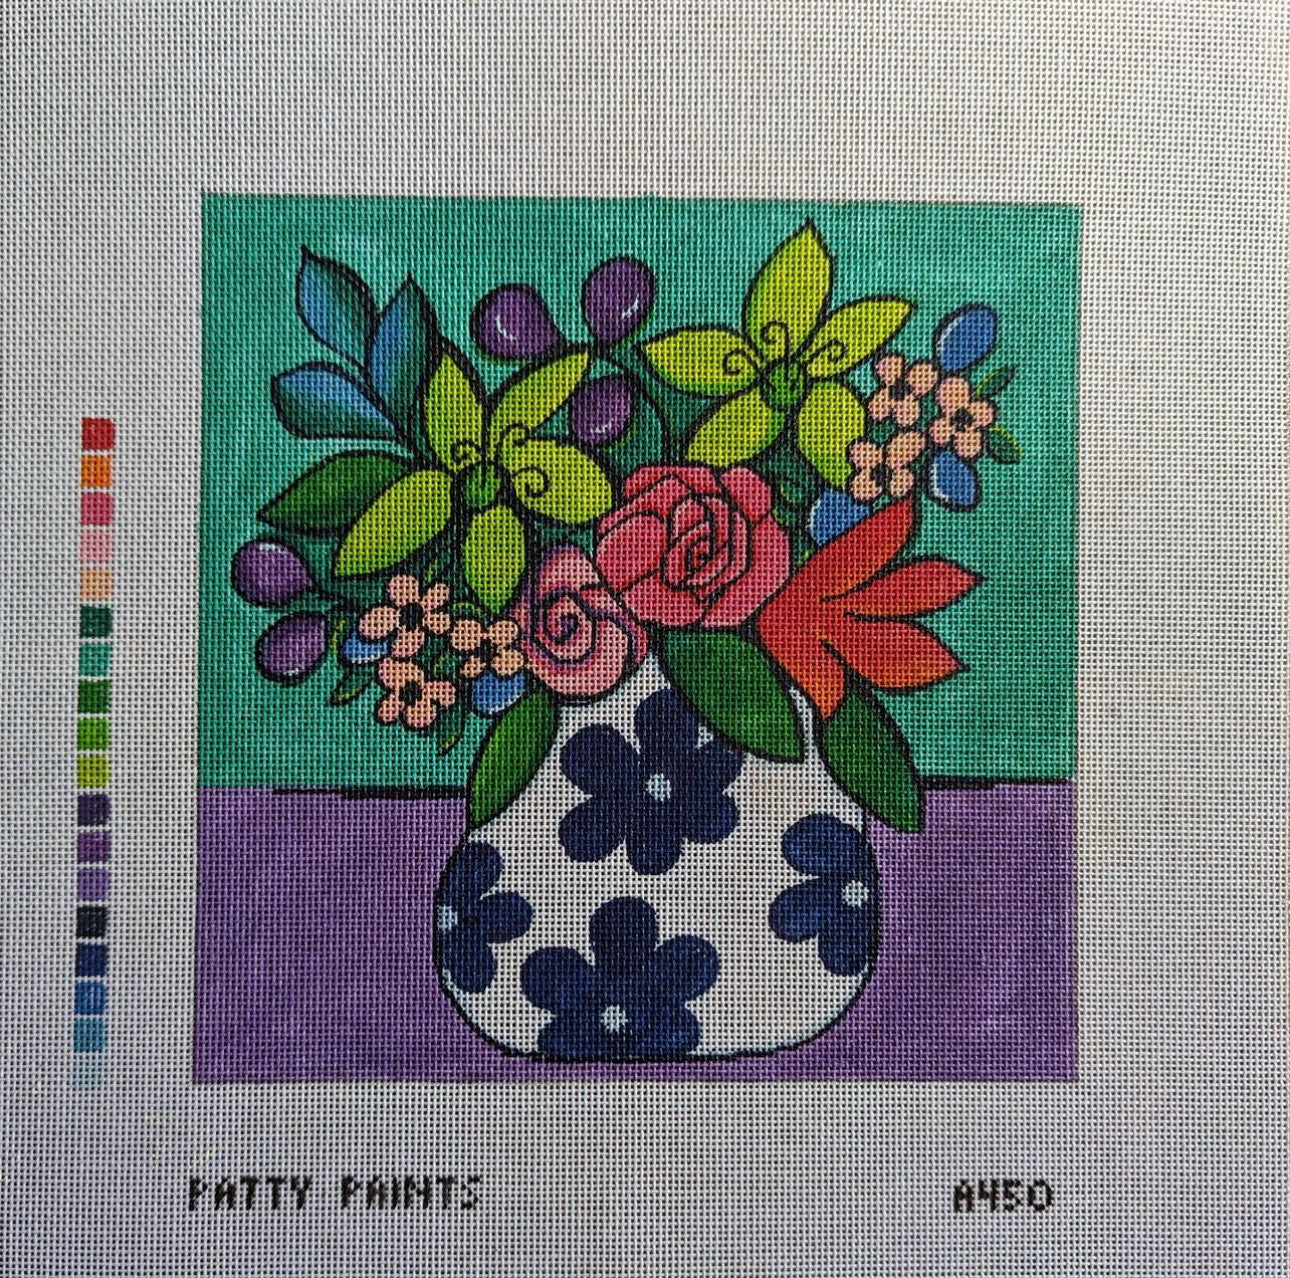 Patty Paints A450 Floral